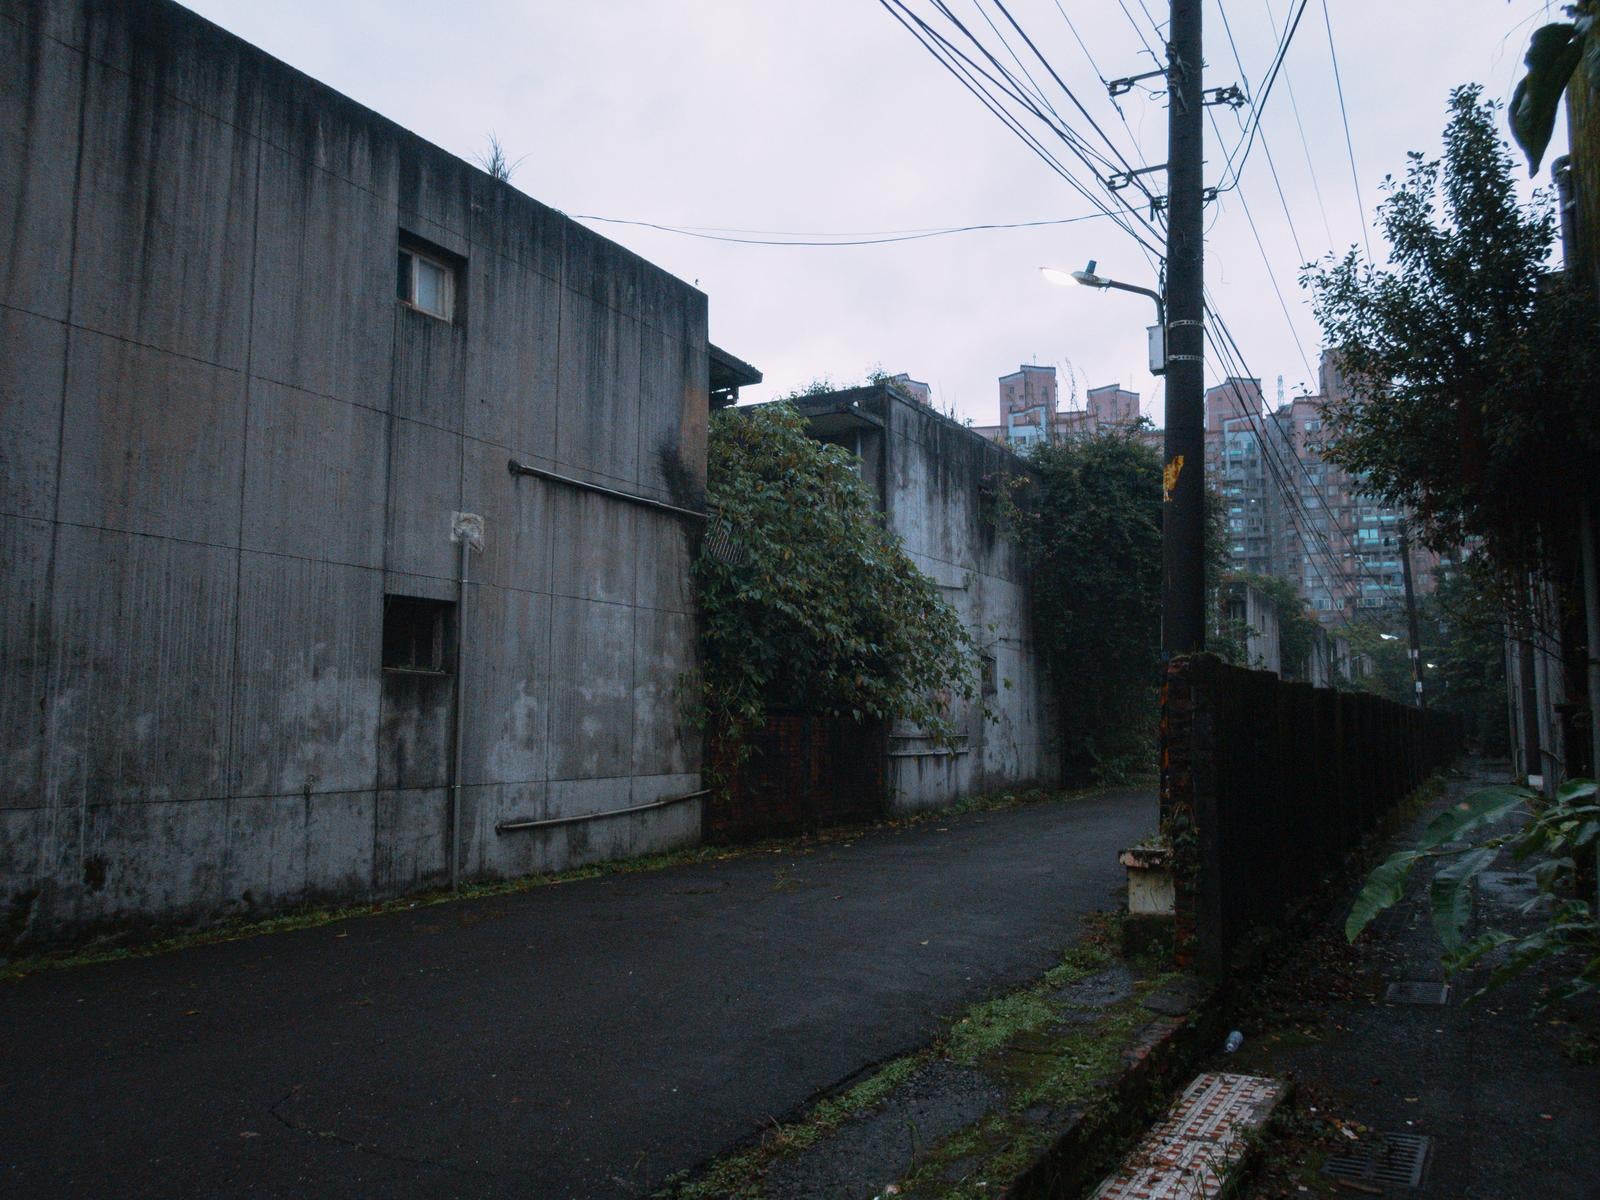 「寂れた廃村の街並み」の写真